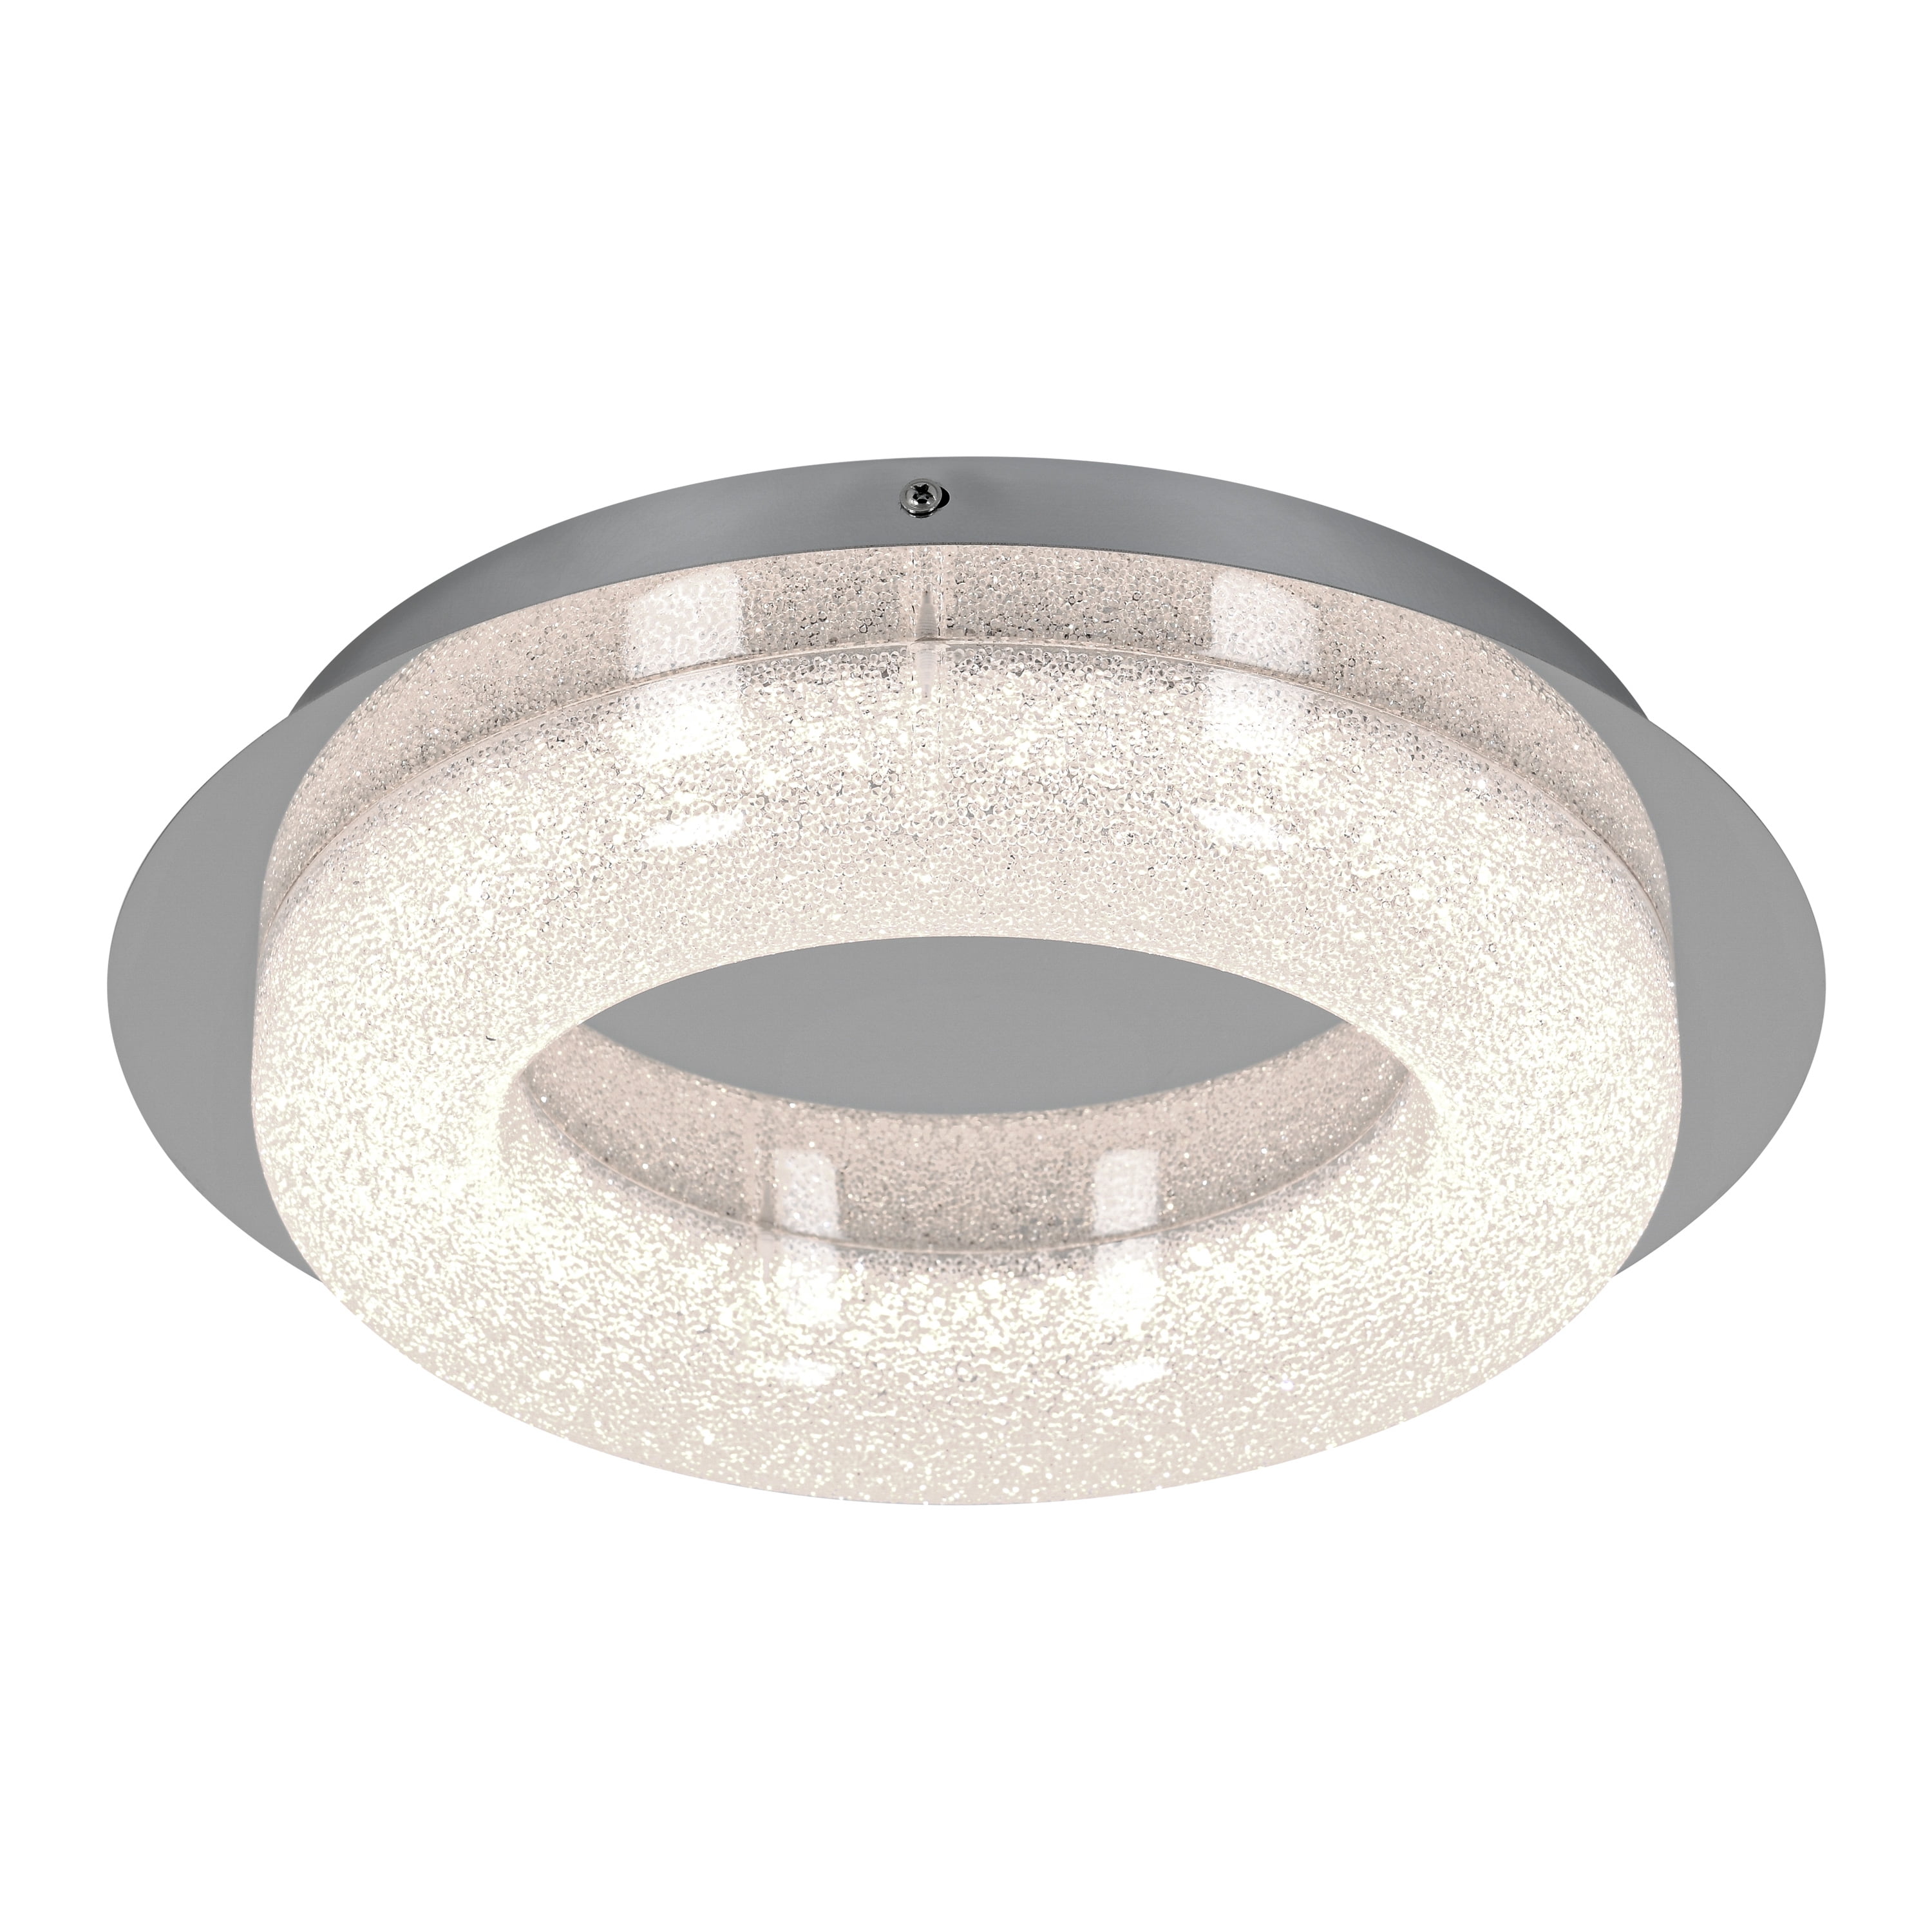 One Ceiling Mount Fixture, Integrated Flush LED Famous Chrome Artika Light Light Finish